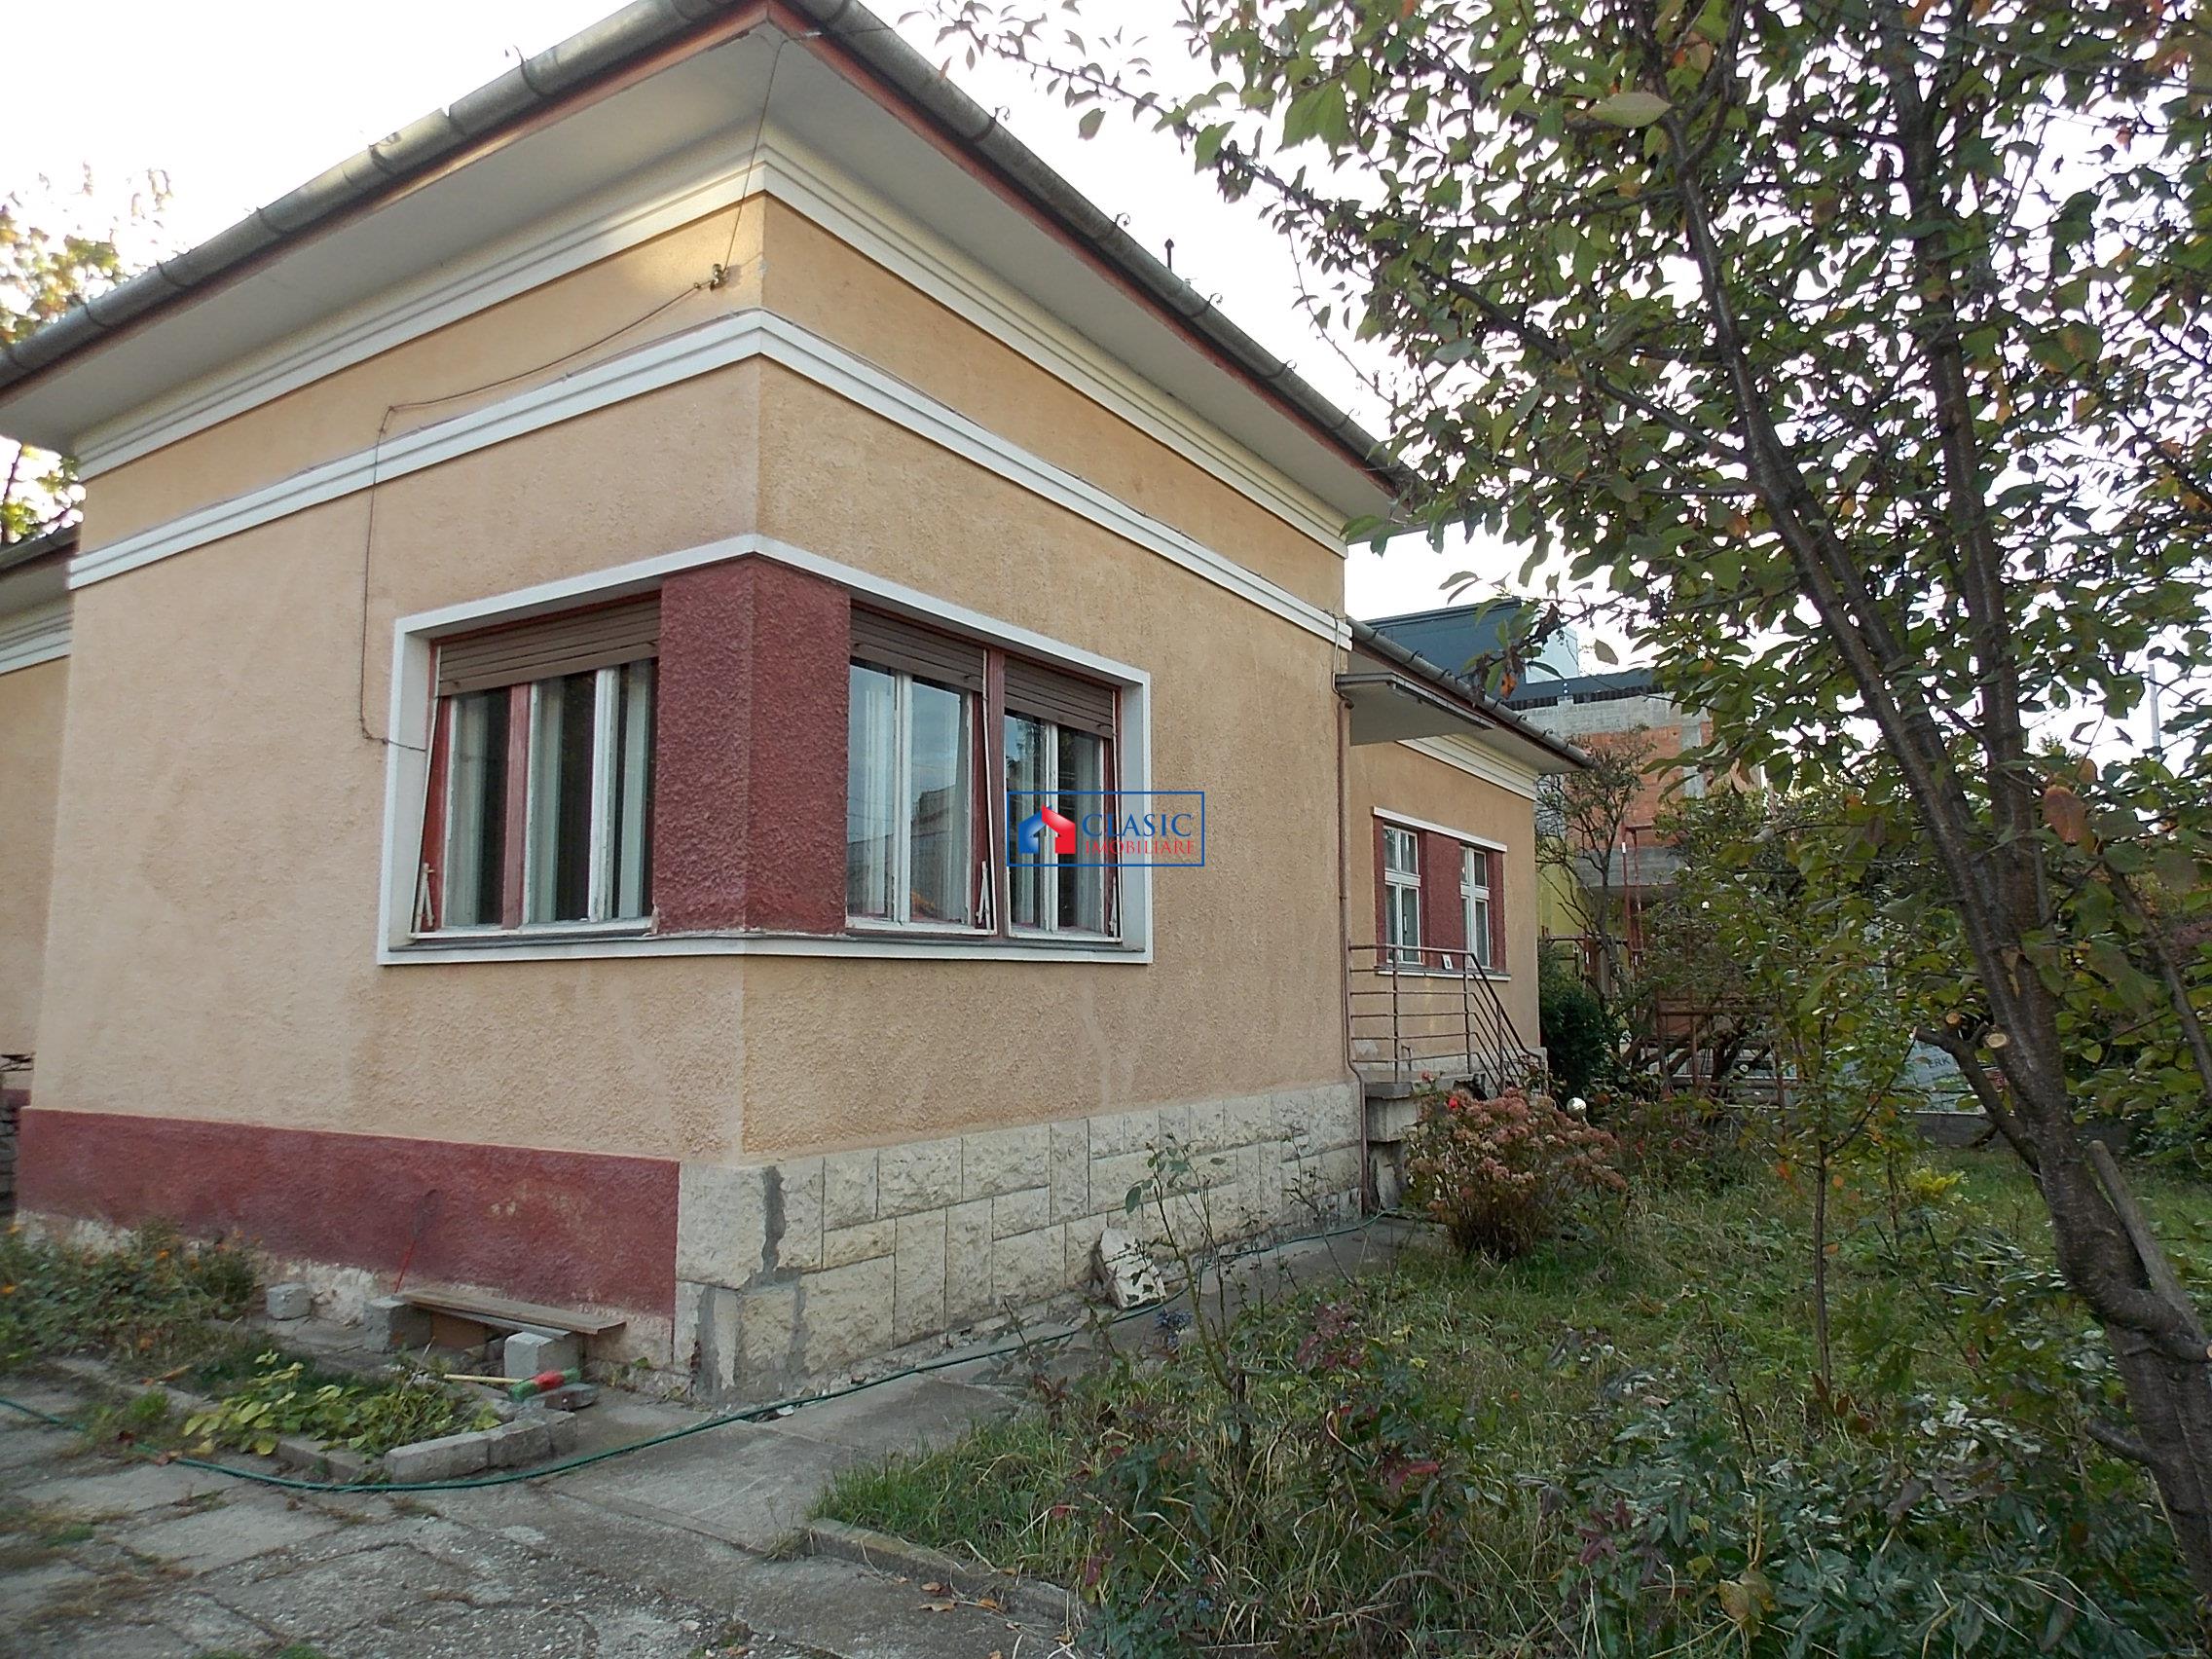 Inchiriere casa individuala 1000 mp teren A.Muresanu, Cluj Napoca